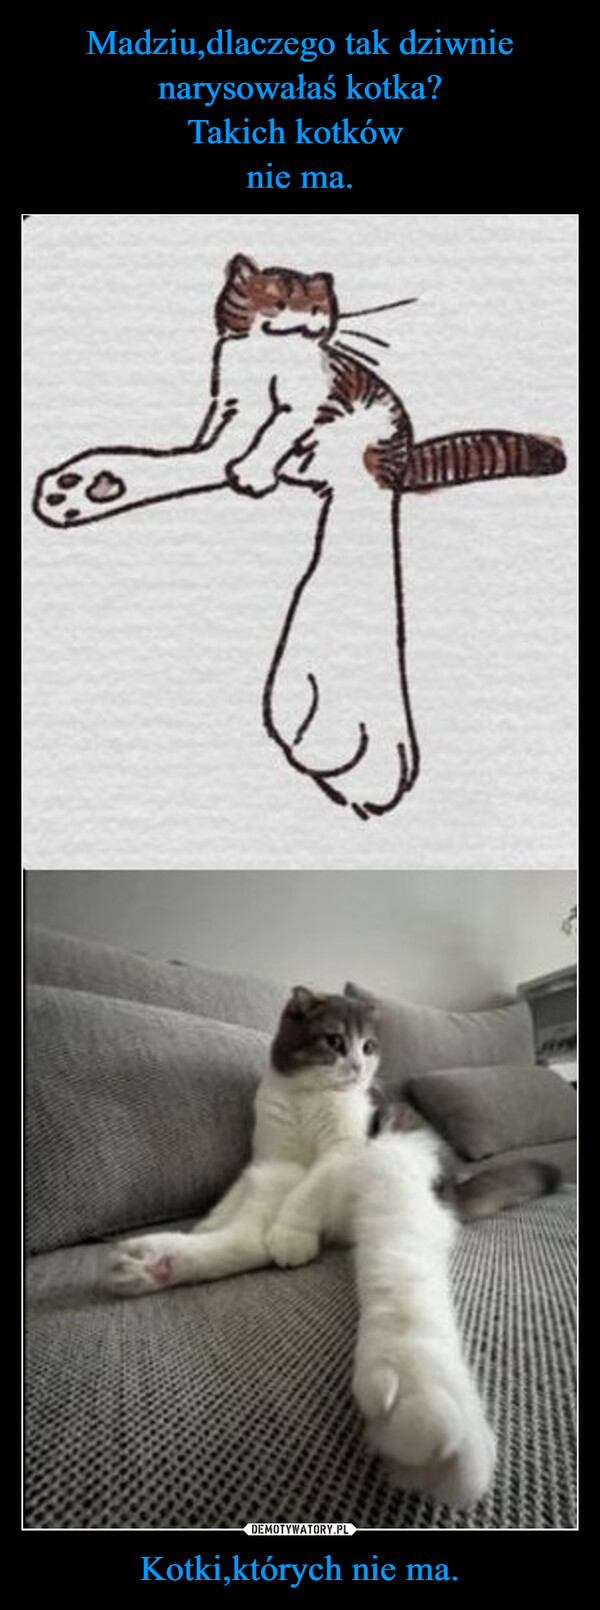 Madziu,dlaczego tak dziwnie narysowałaś kotka?
Takich kotków 
nie ma. Kotki,których nie ma.